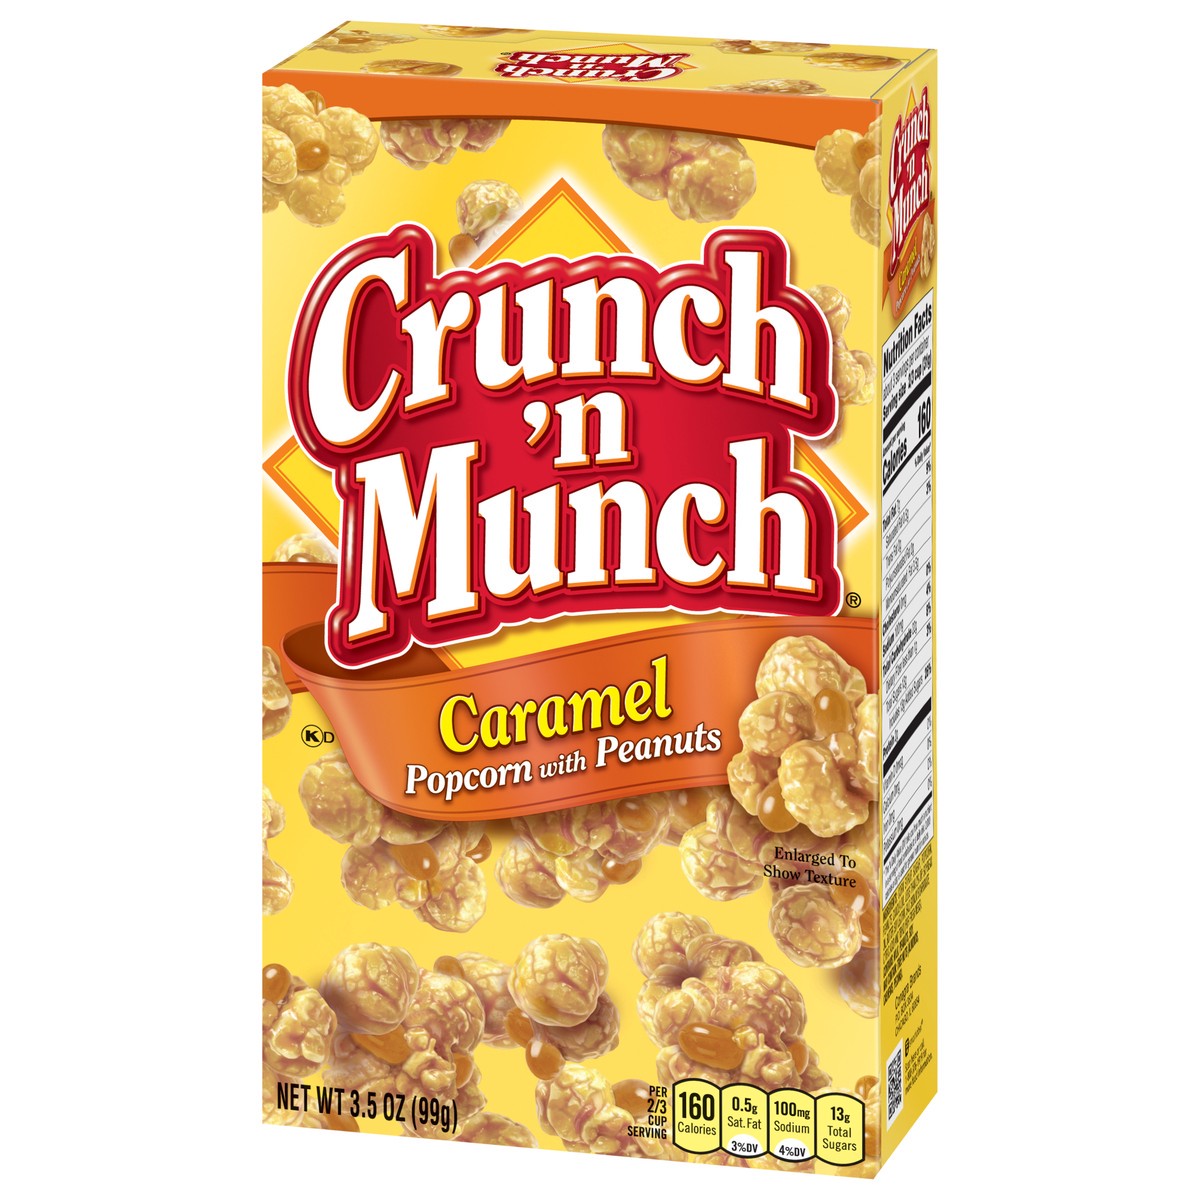 slide 9 of 9, Crunch 'n Munch Caramel Popcorn with Peanuts 3.5 oz, 3.5 oz